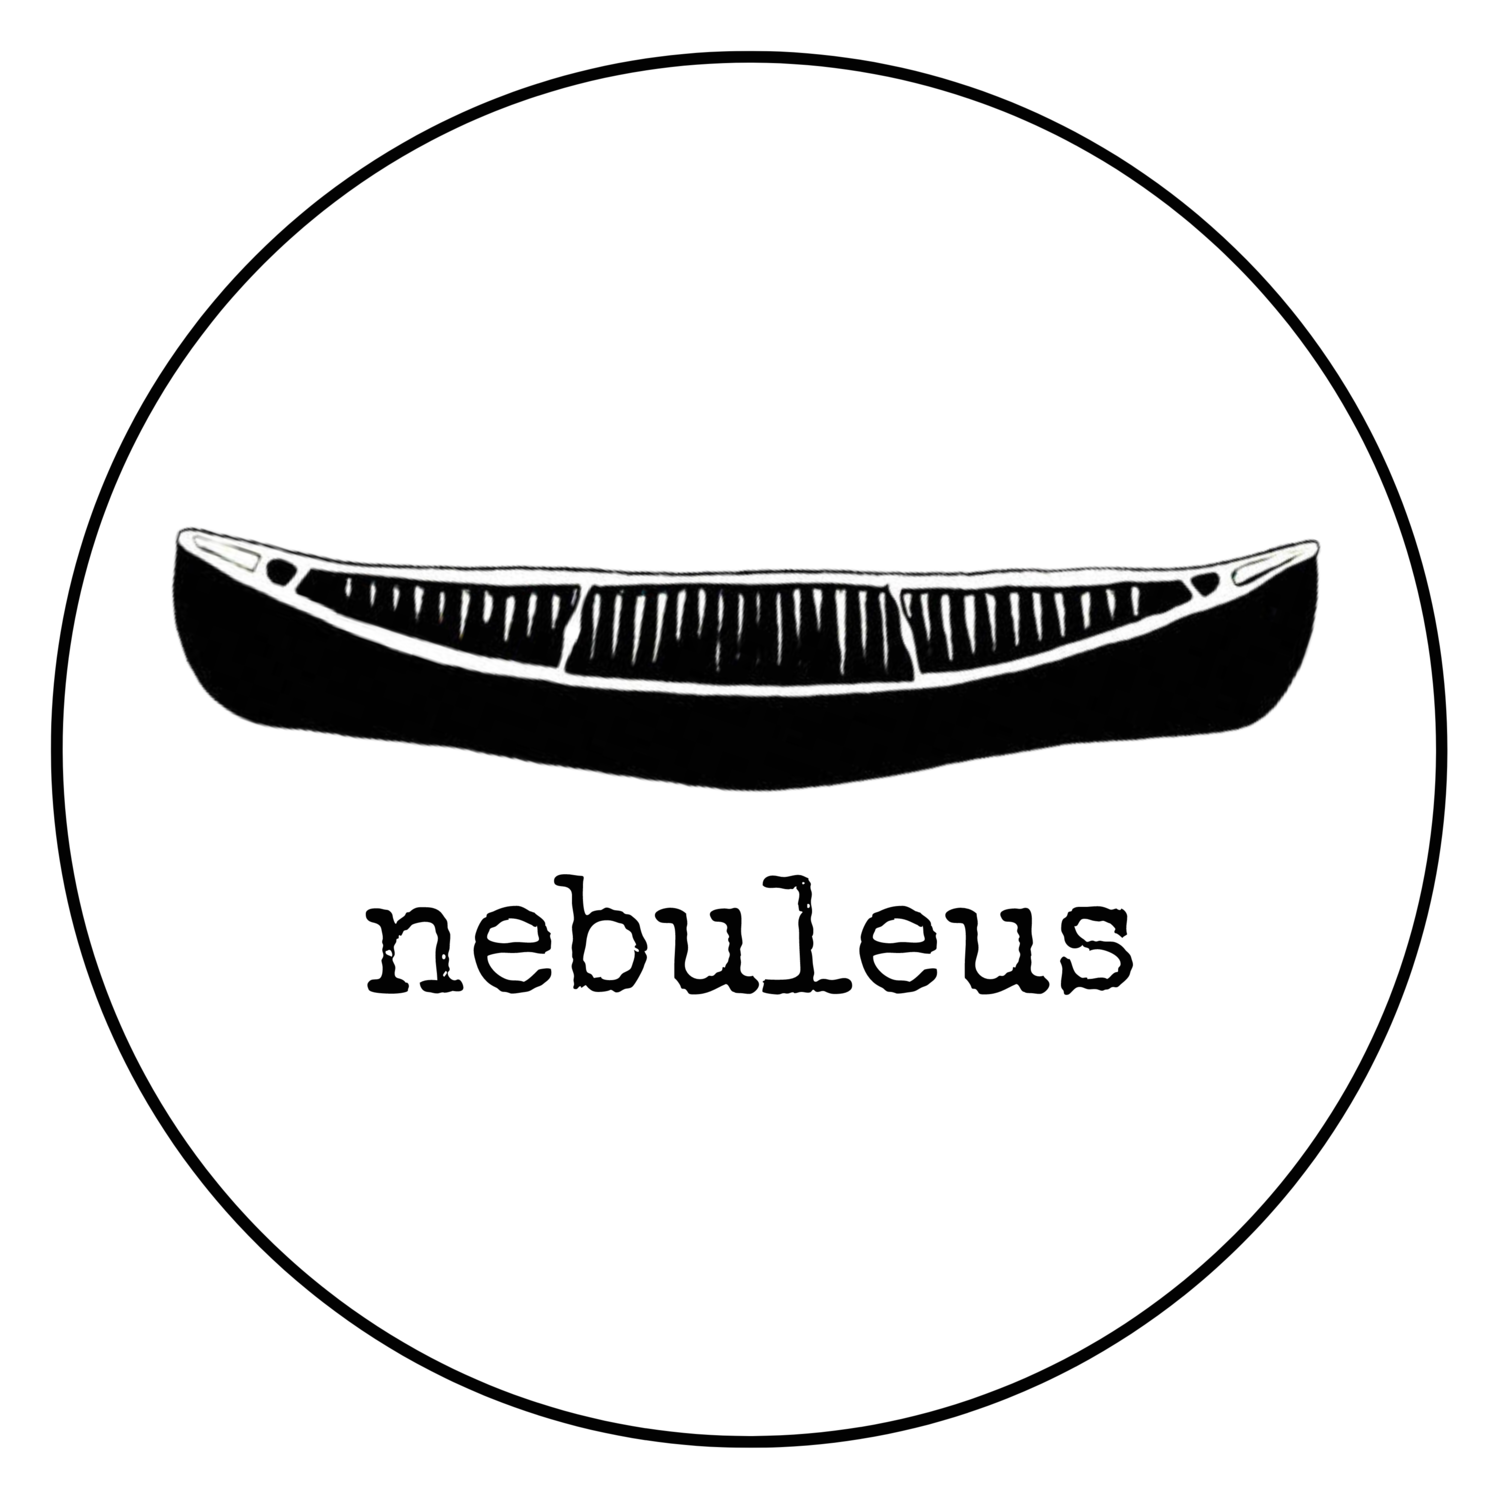 nebuleus